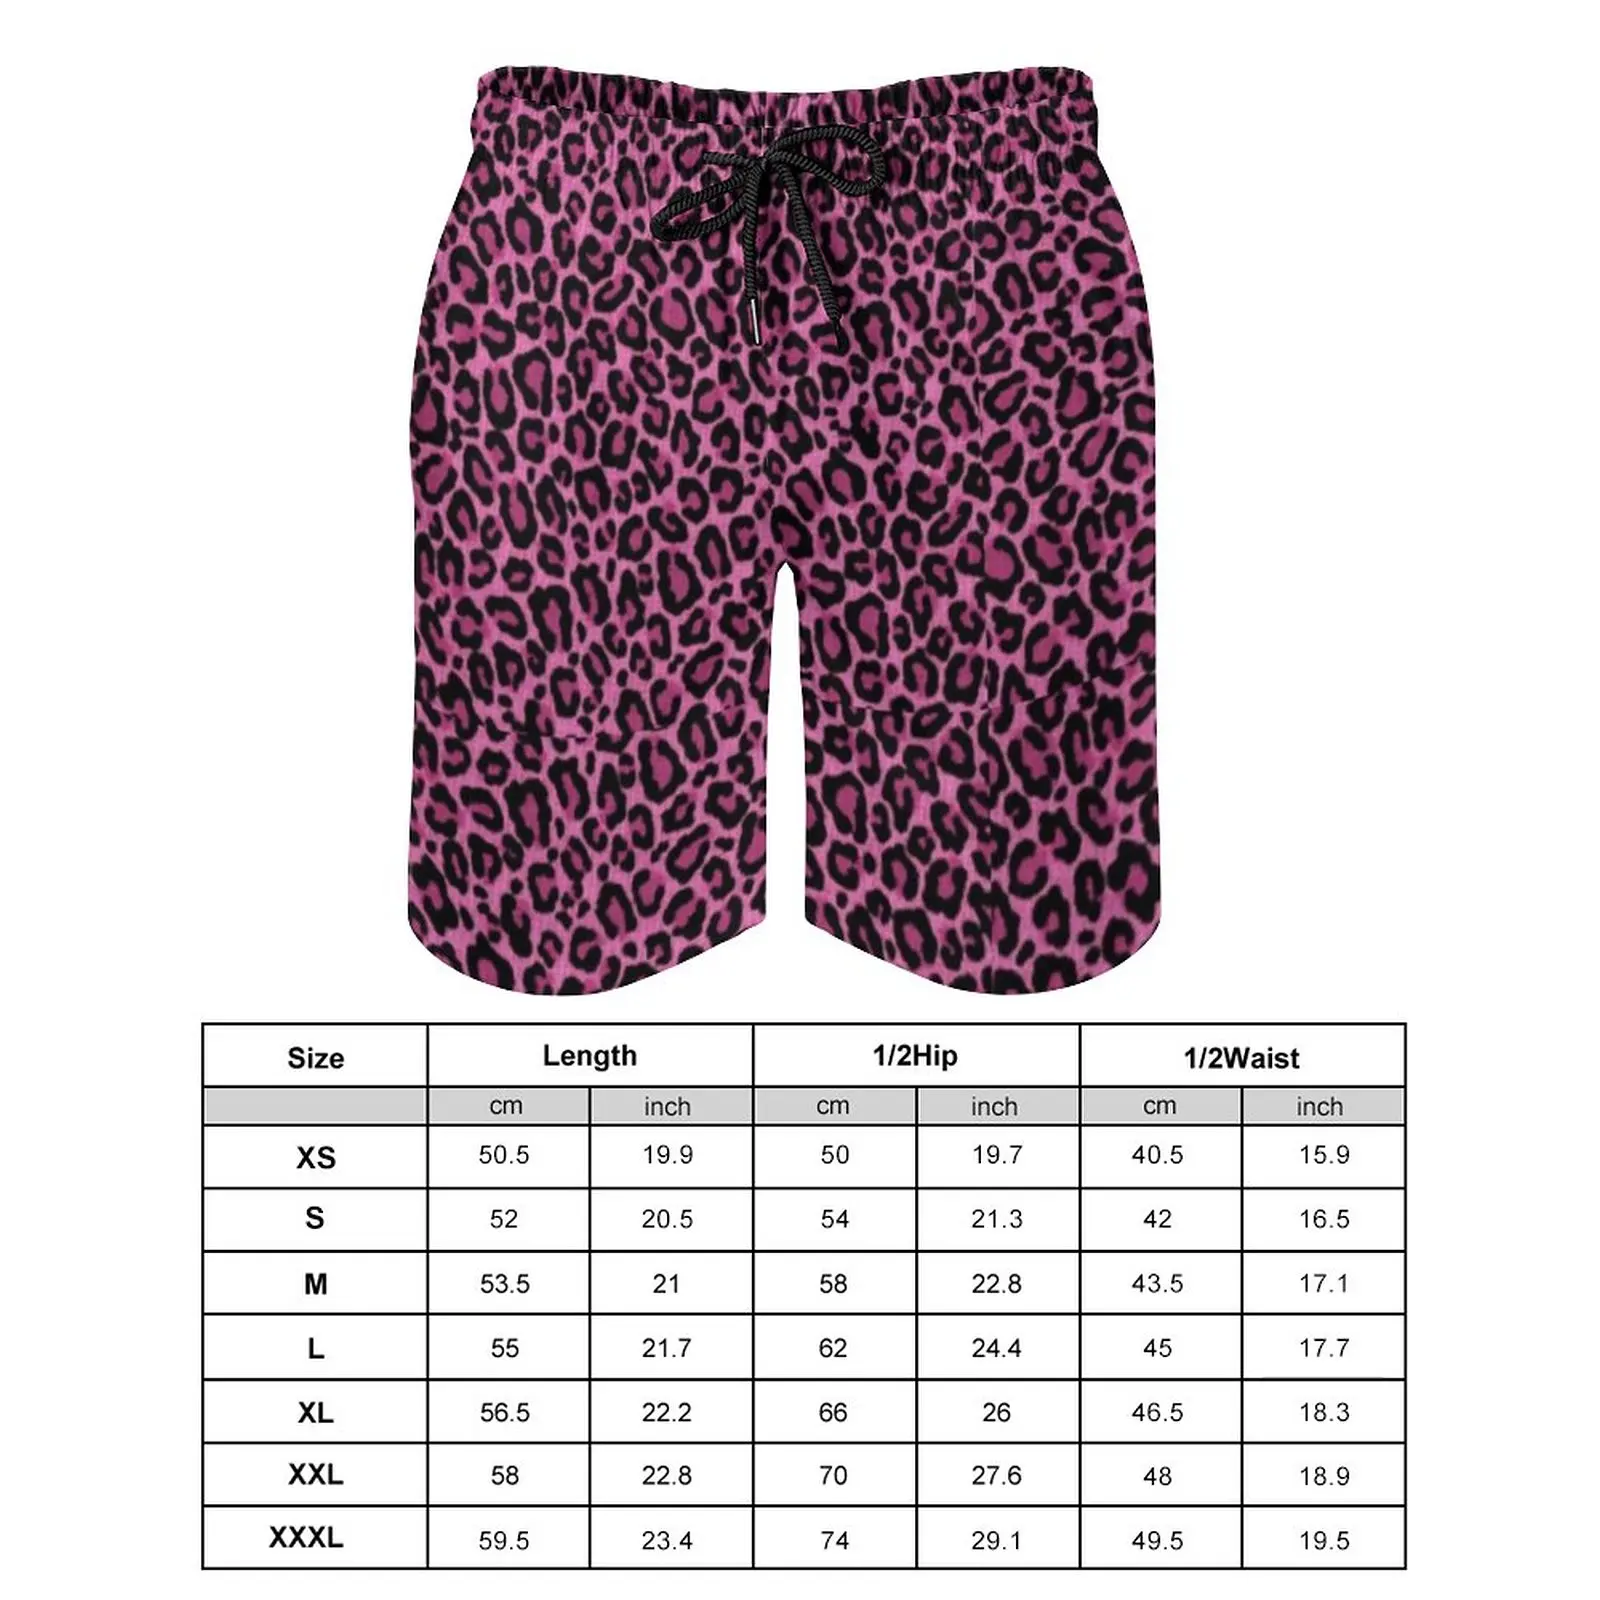 Funky leopard print board shorts de alta qualidade rosa preto